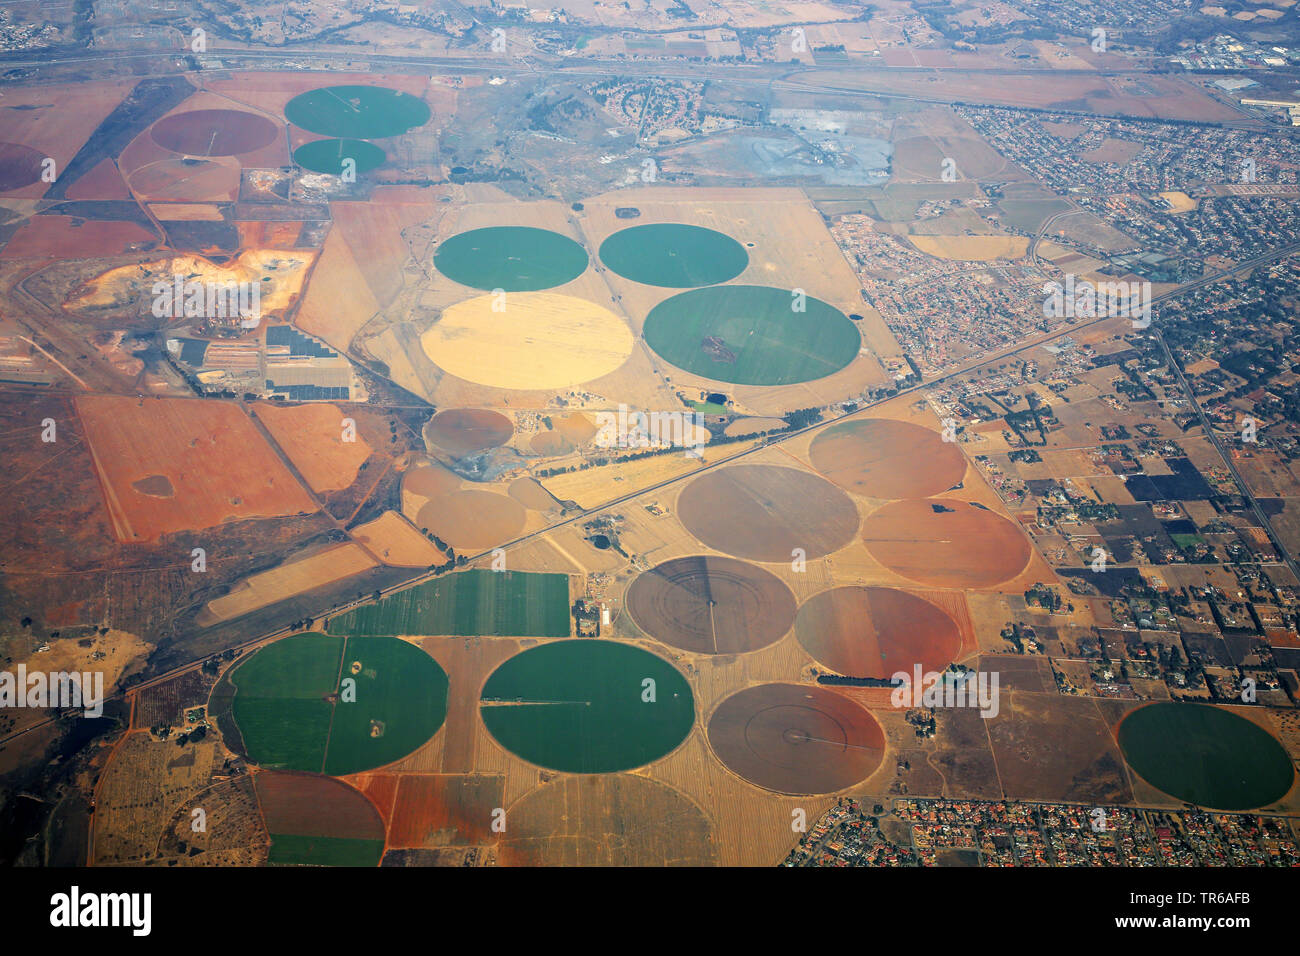 Vue aérienne de l'irrigation à pivot central, Afrique du Sud, Johannesburg Banque D'Images